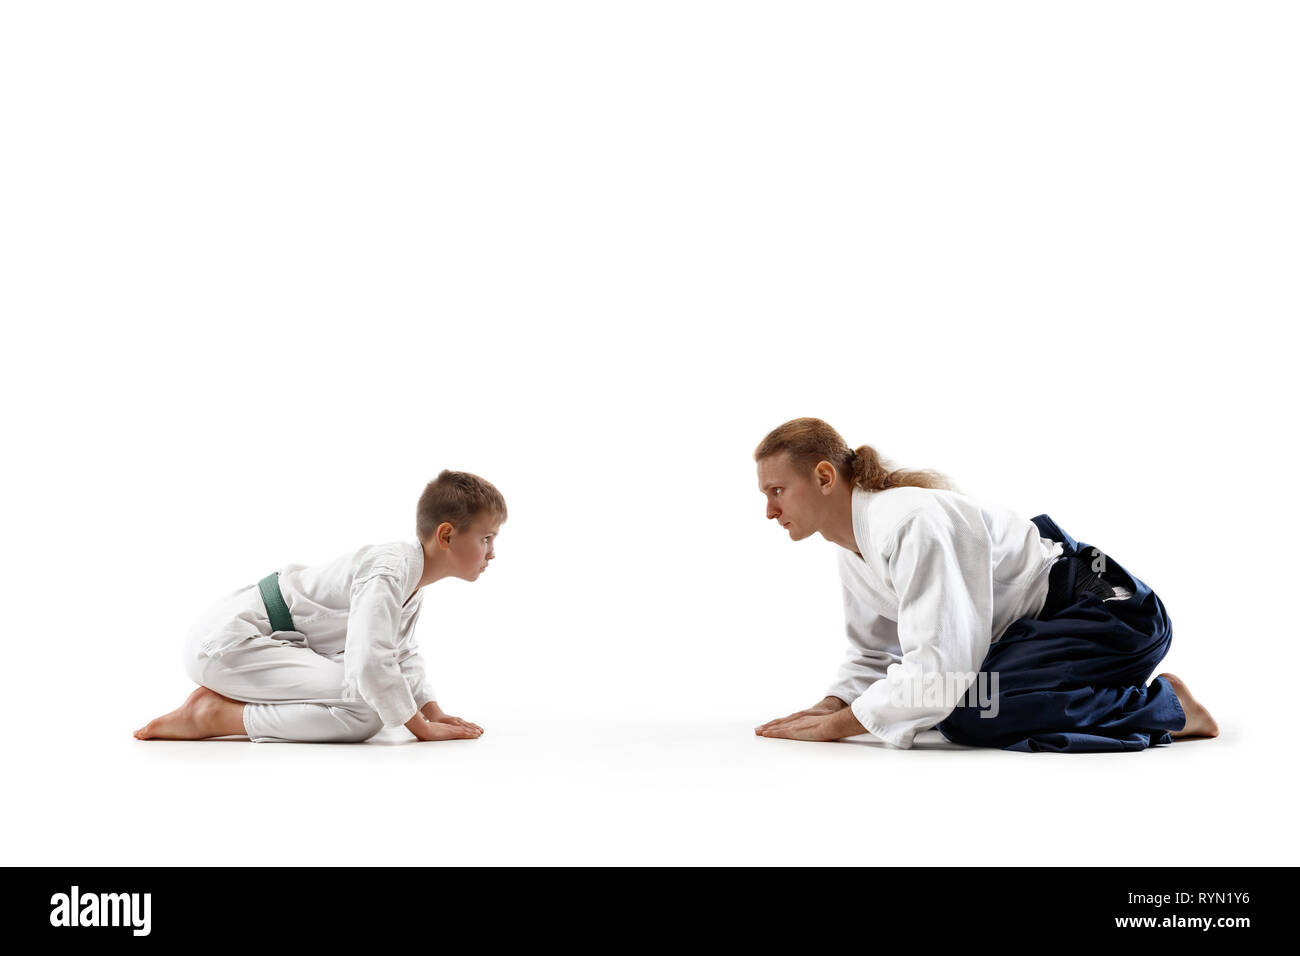 Mann und jugendlich Junge an Aikido Training in Martial Arts School. Gesunder Lebensstil und Sport Konzept. Fightrers in weißen Kimono auf weißem Hintergrund. Karate Männer mit konzentrierten Gesichter in Uniform Grüße. Stockfoto